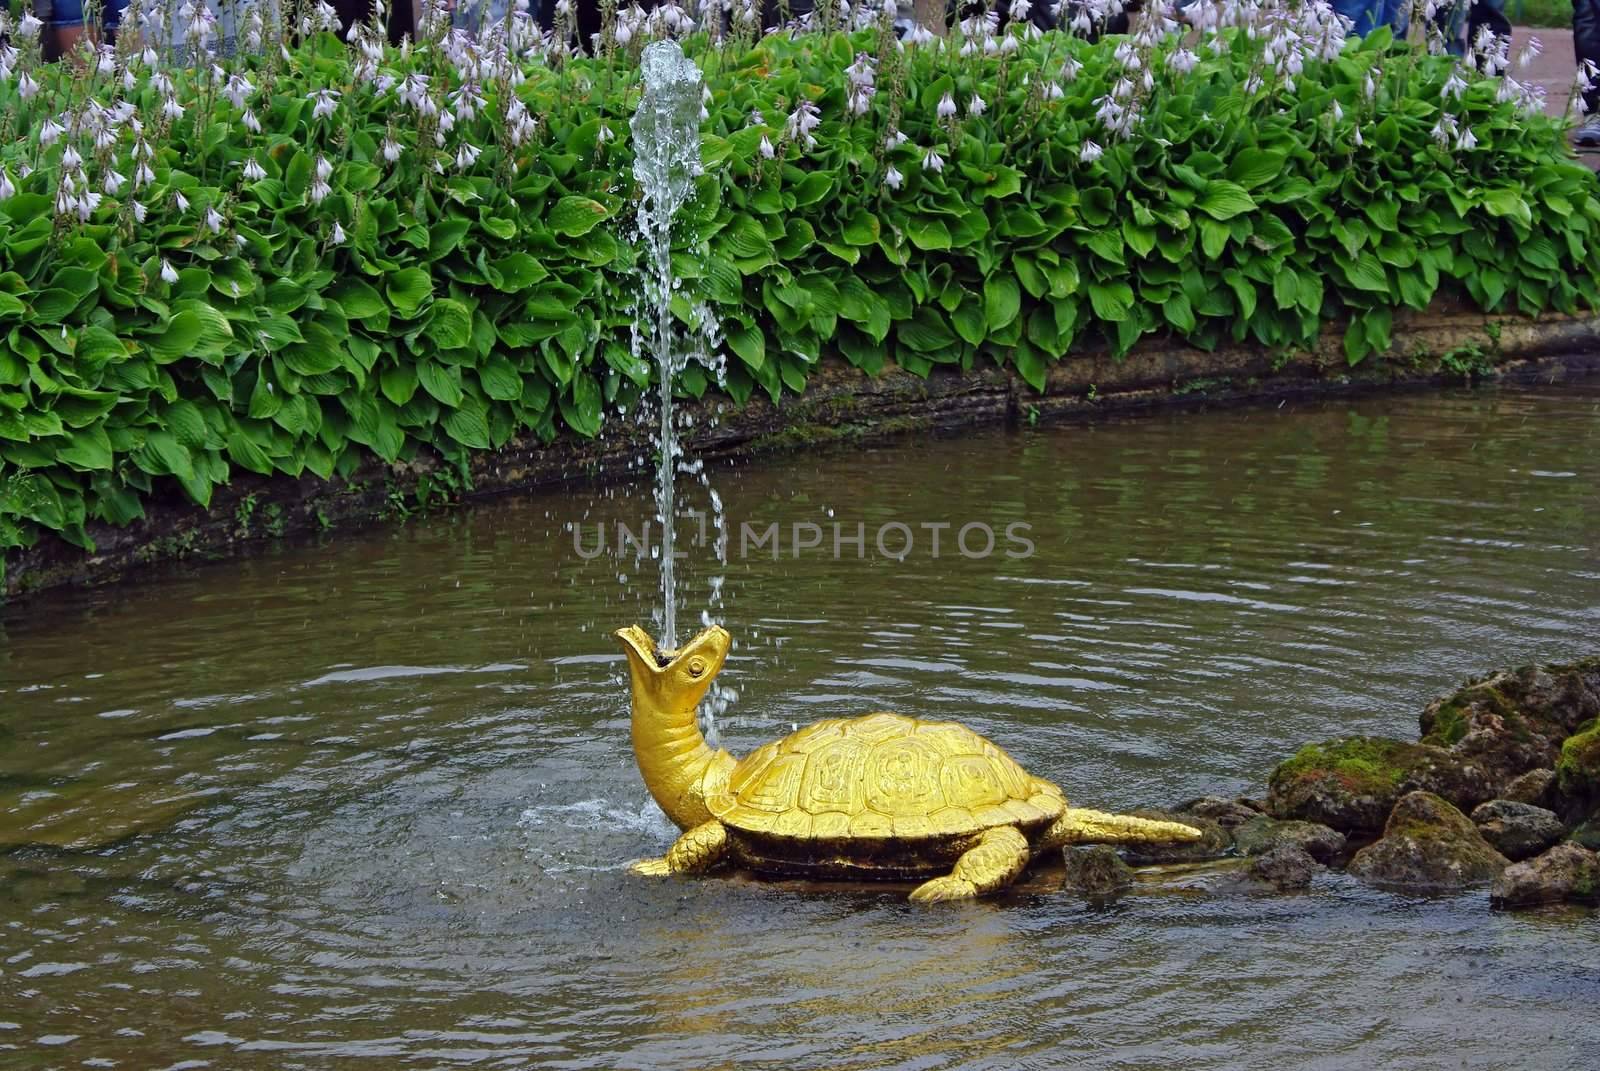 Fountain "The Turtles" In Petrodvorets (Peterhof), St Petersburg, Russia.